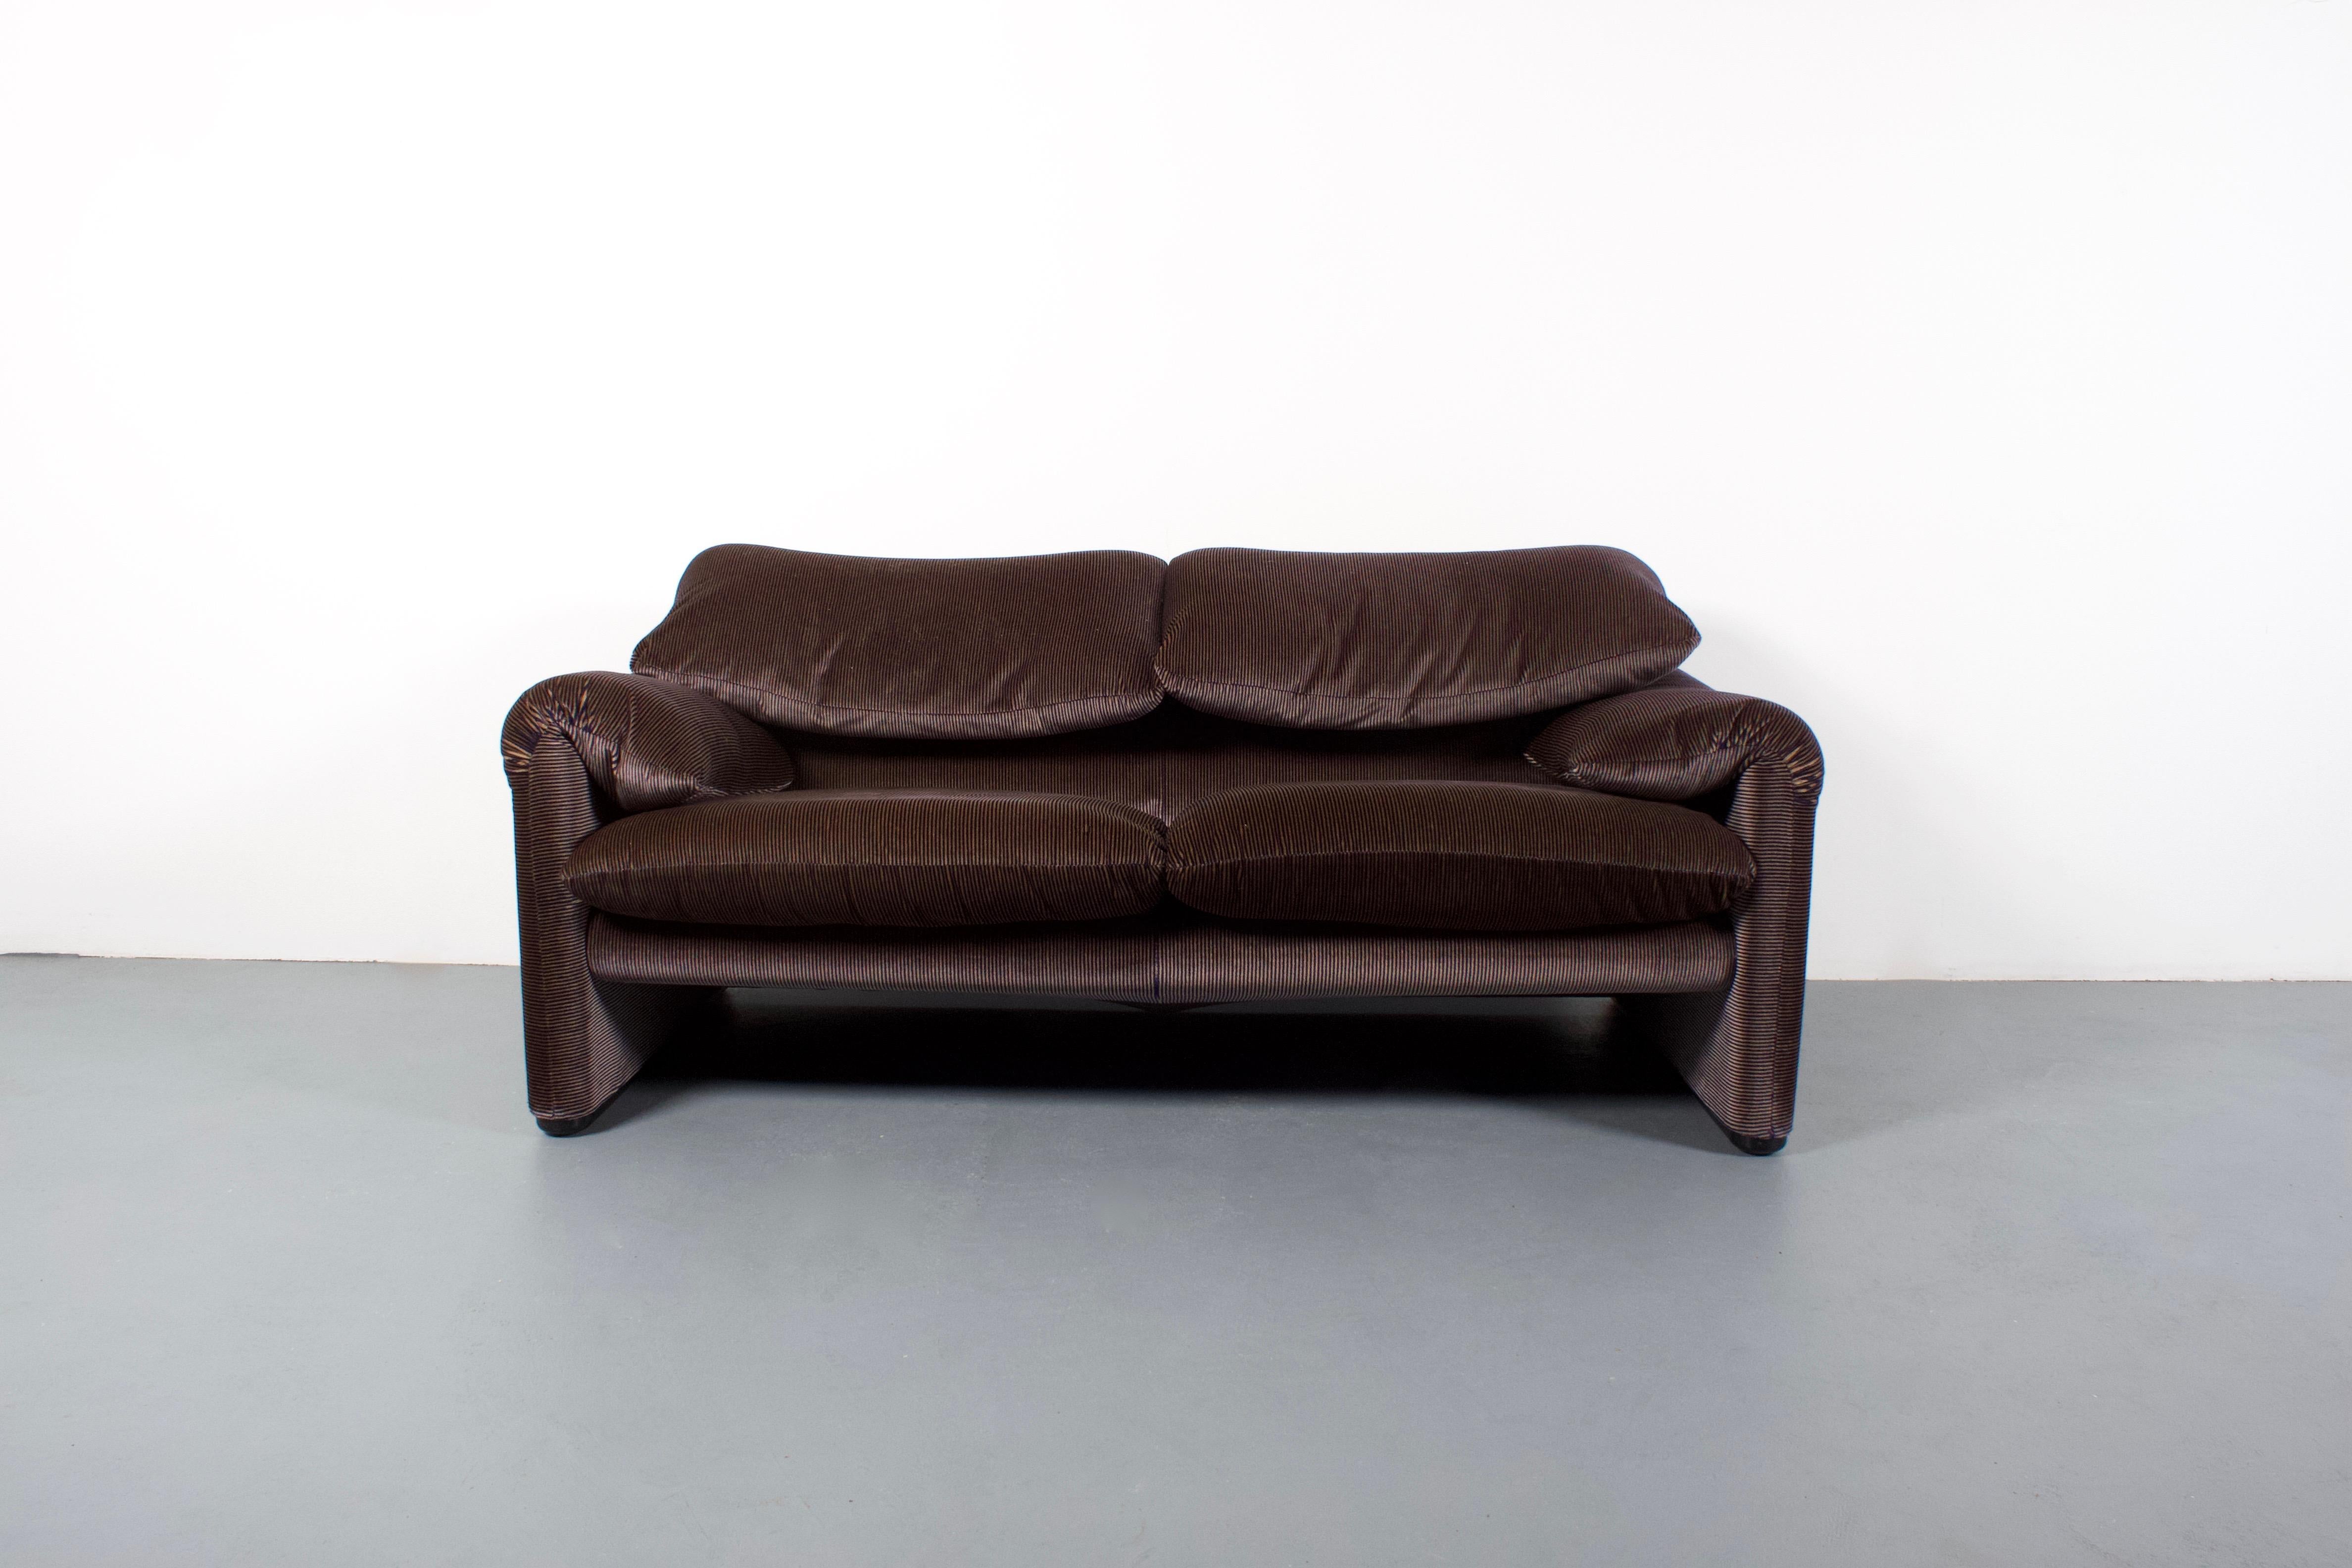 maralunga sofa replica